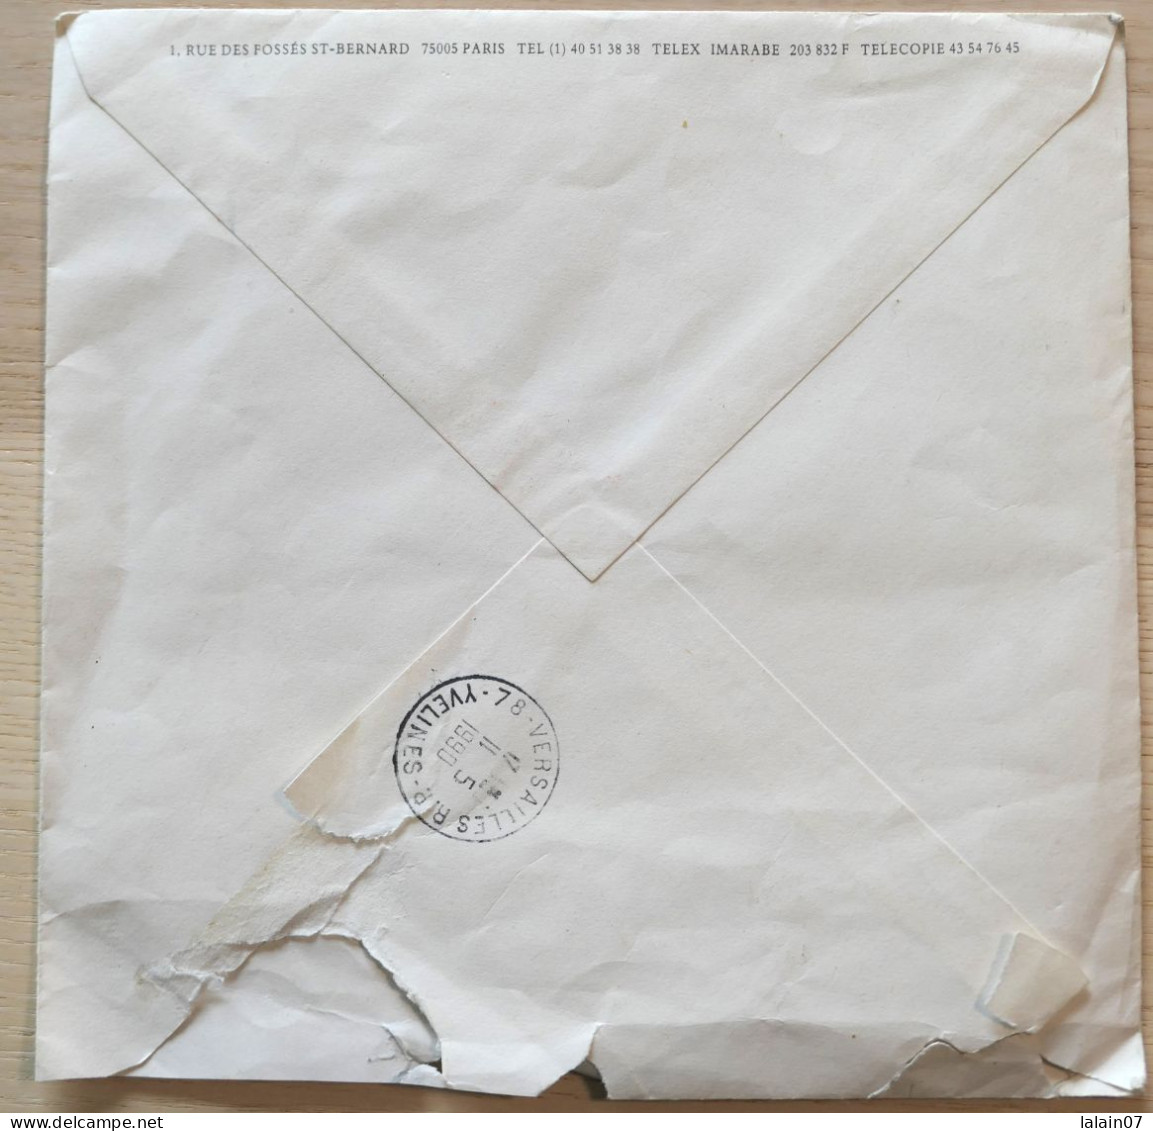 Enveloppe Affranchie "INSTITUT DU MONDE ARABE" Avec 2 Cachets Premier Jour Du 5 Mai 1990, Paris - Commemorative Postmarks